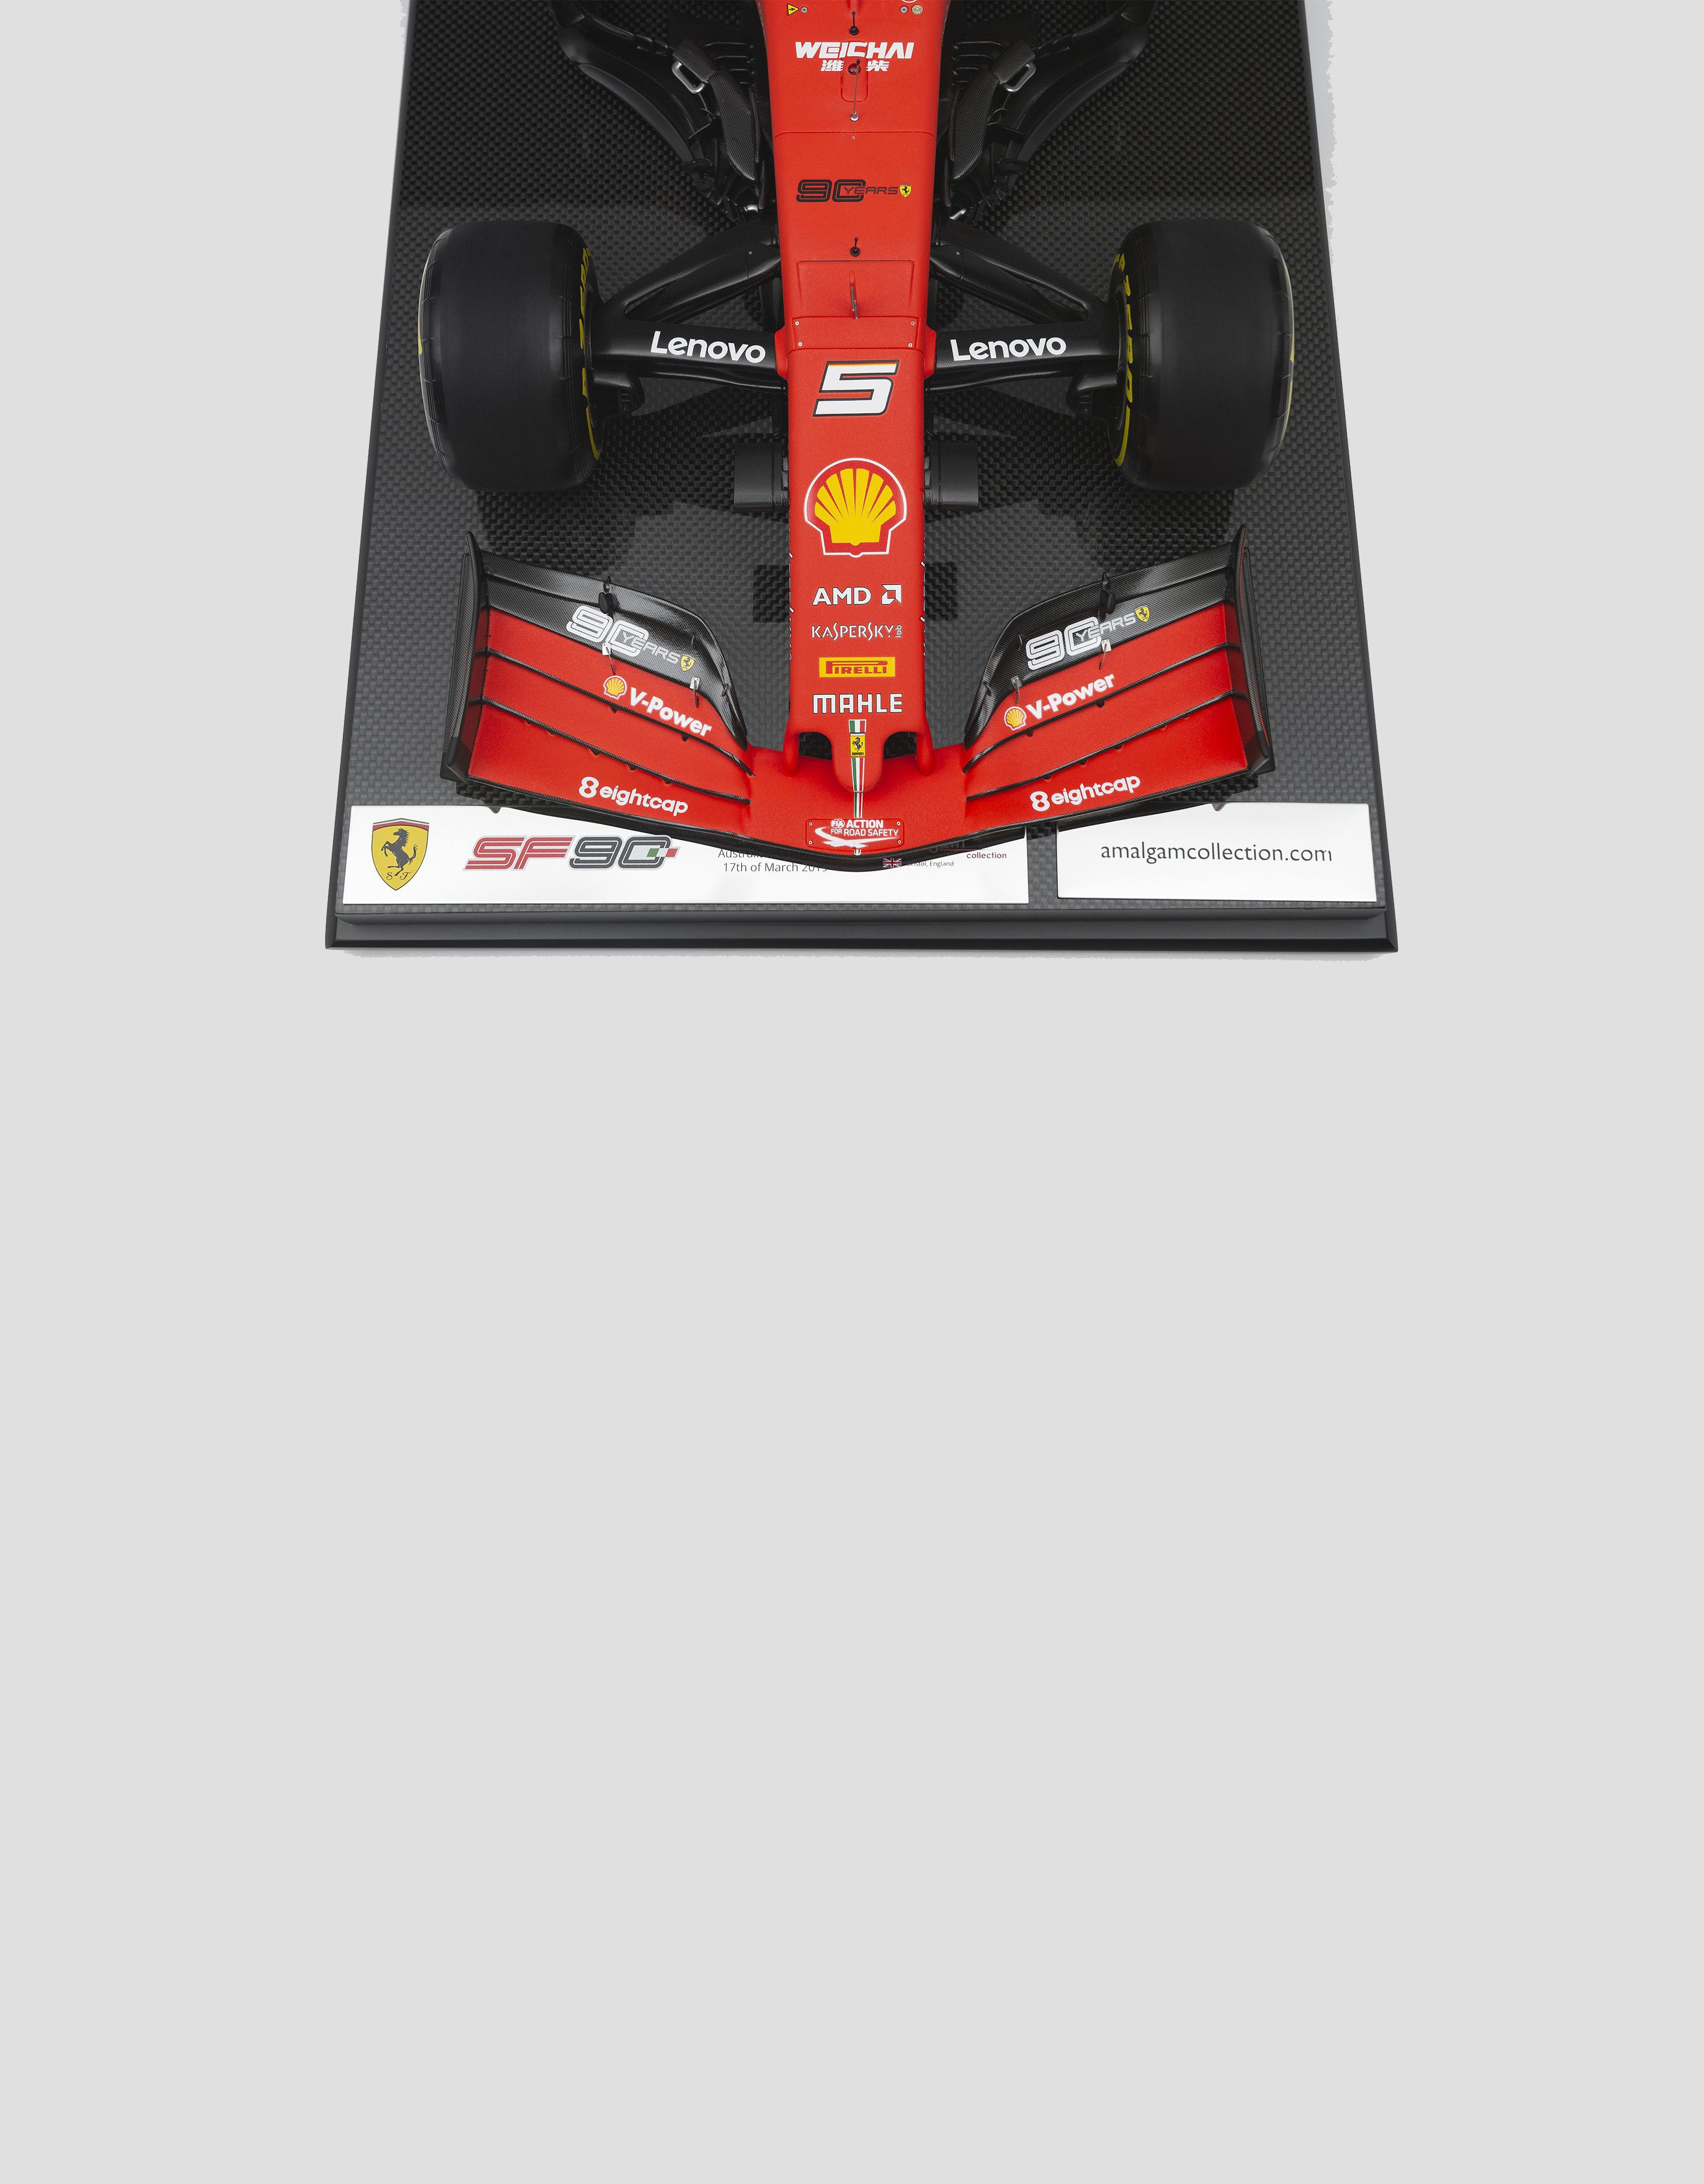 Ferrari Ferrari SF90 Vettel model in 1:8 scale Red L7981f